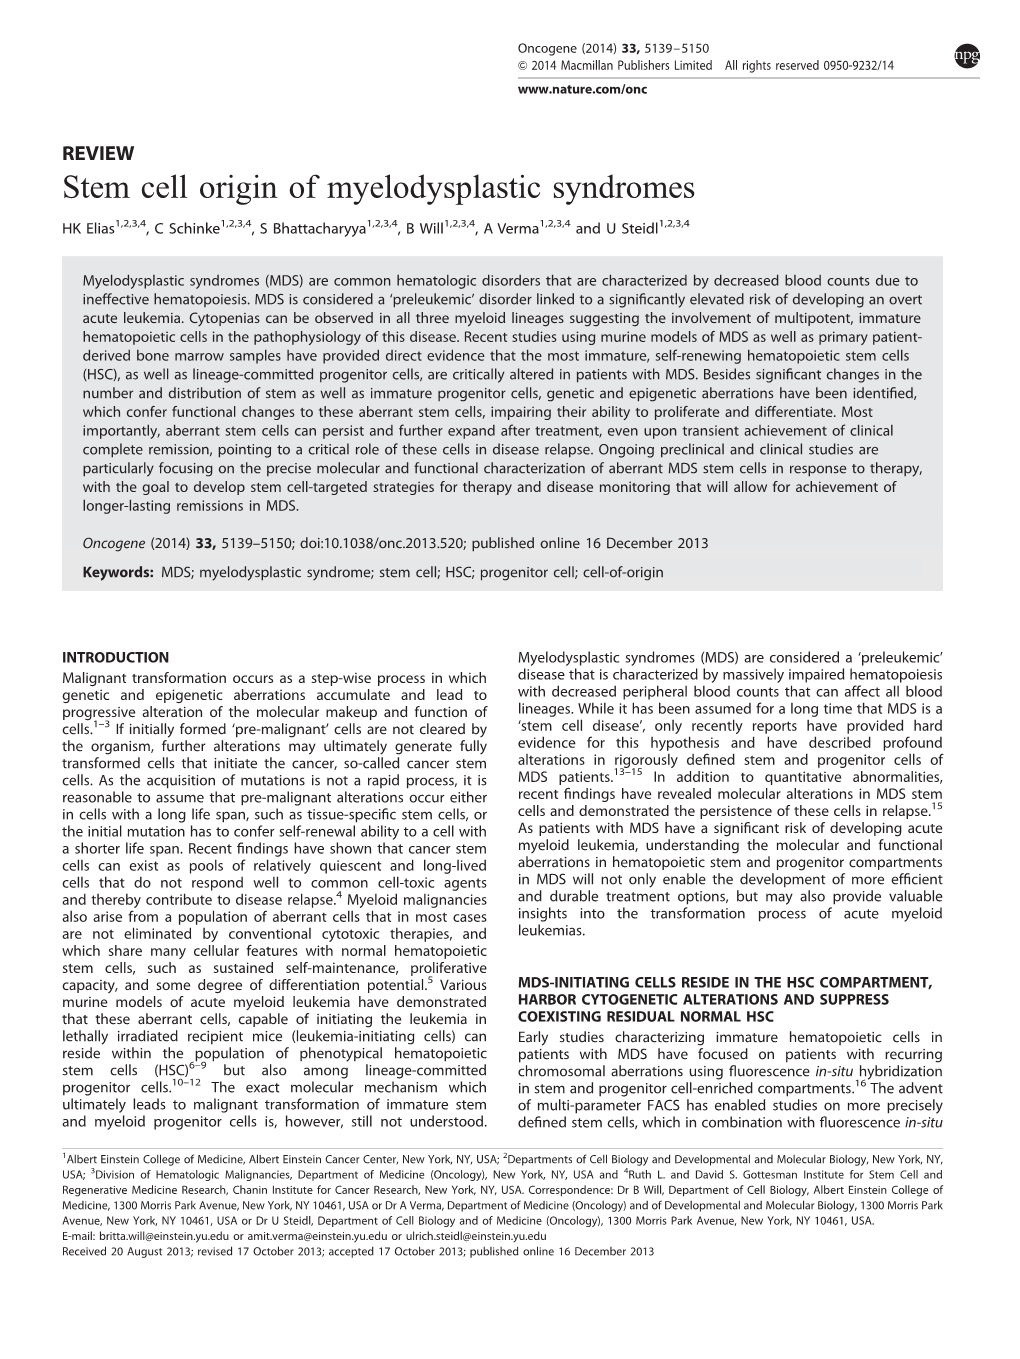 Stem Cell Origin of Myelodysplastic Syndromes